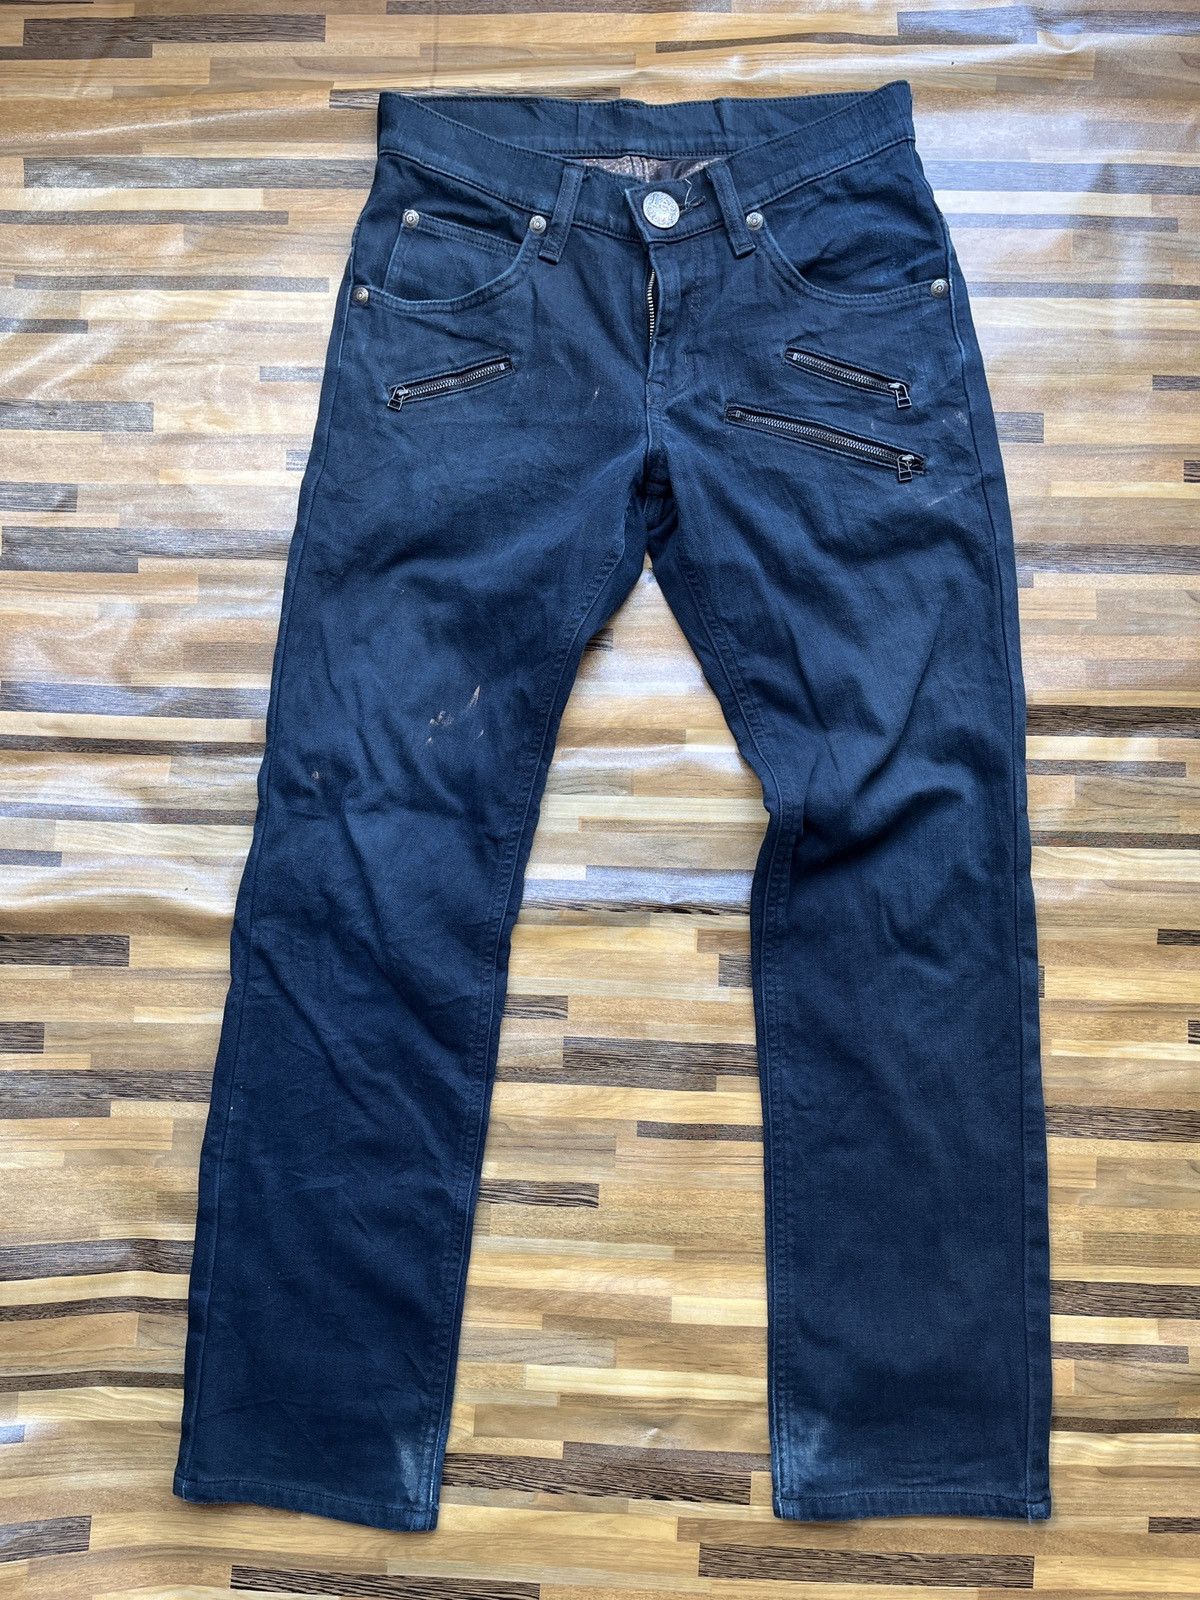 Multipocket Lee Rider Denim Jeans Vintage - 20